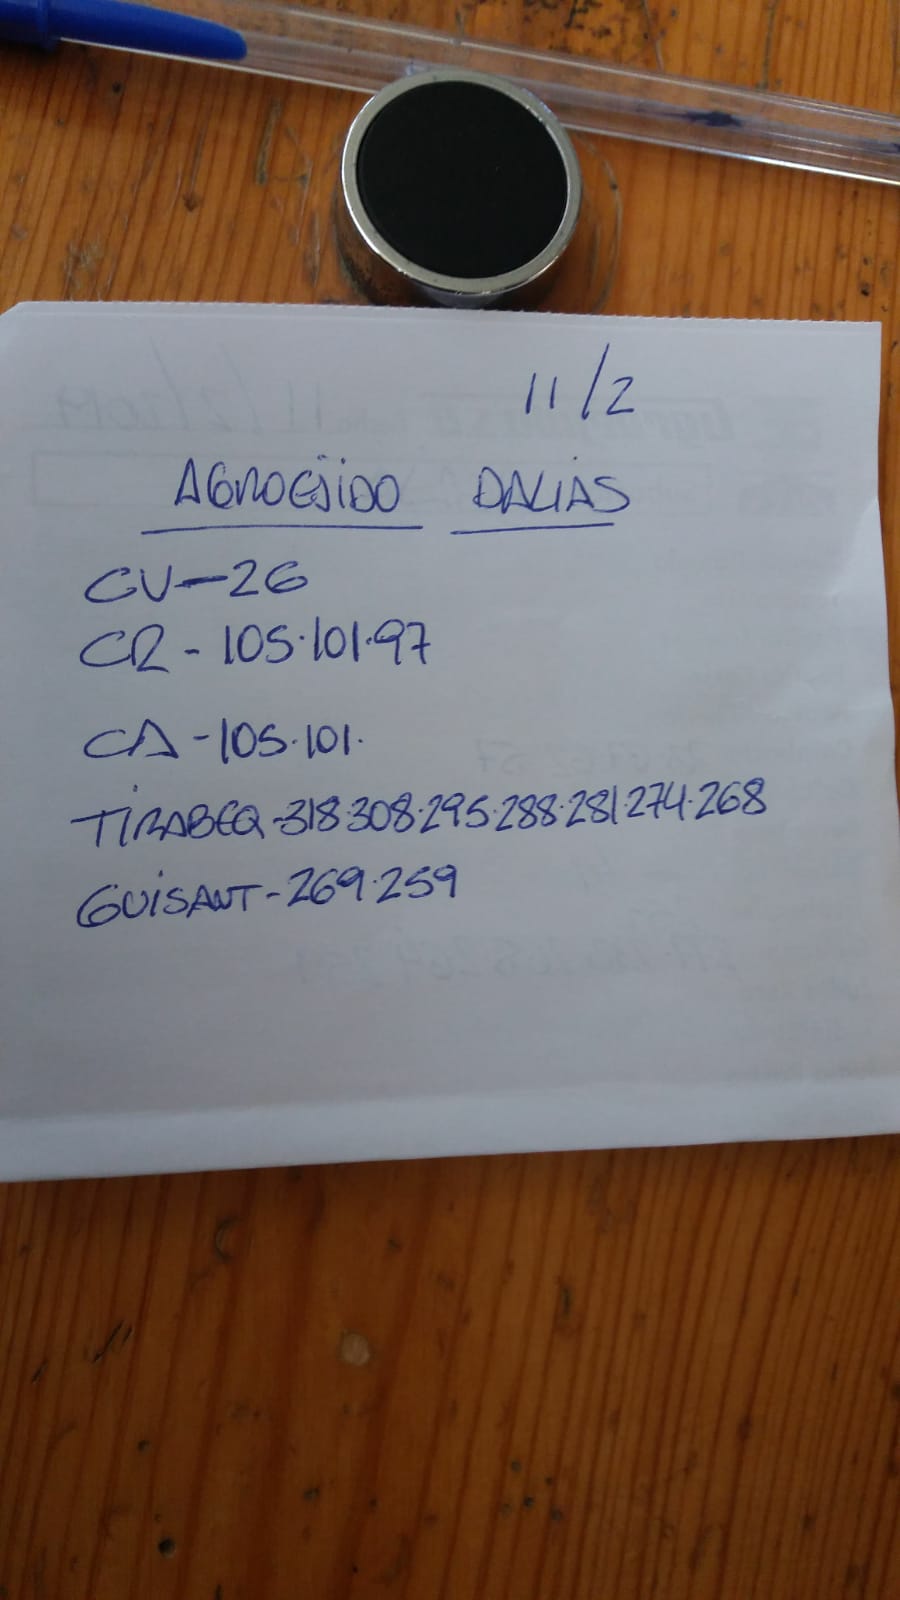 Subasta hortofrutícola AgroEjido Dalias 11 de Febrero 2019